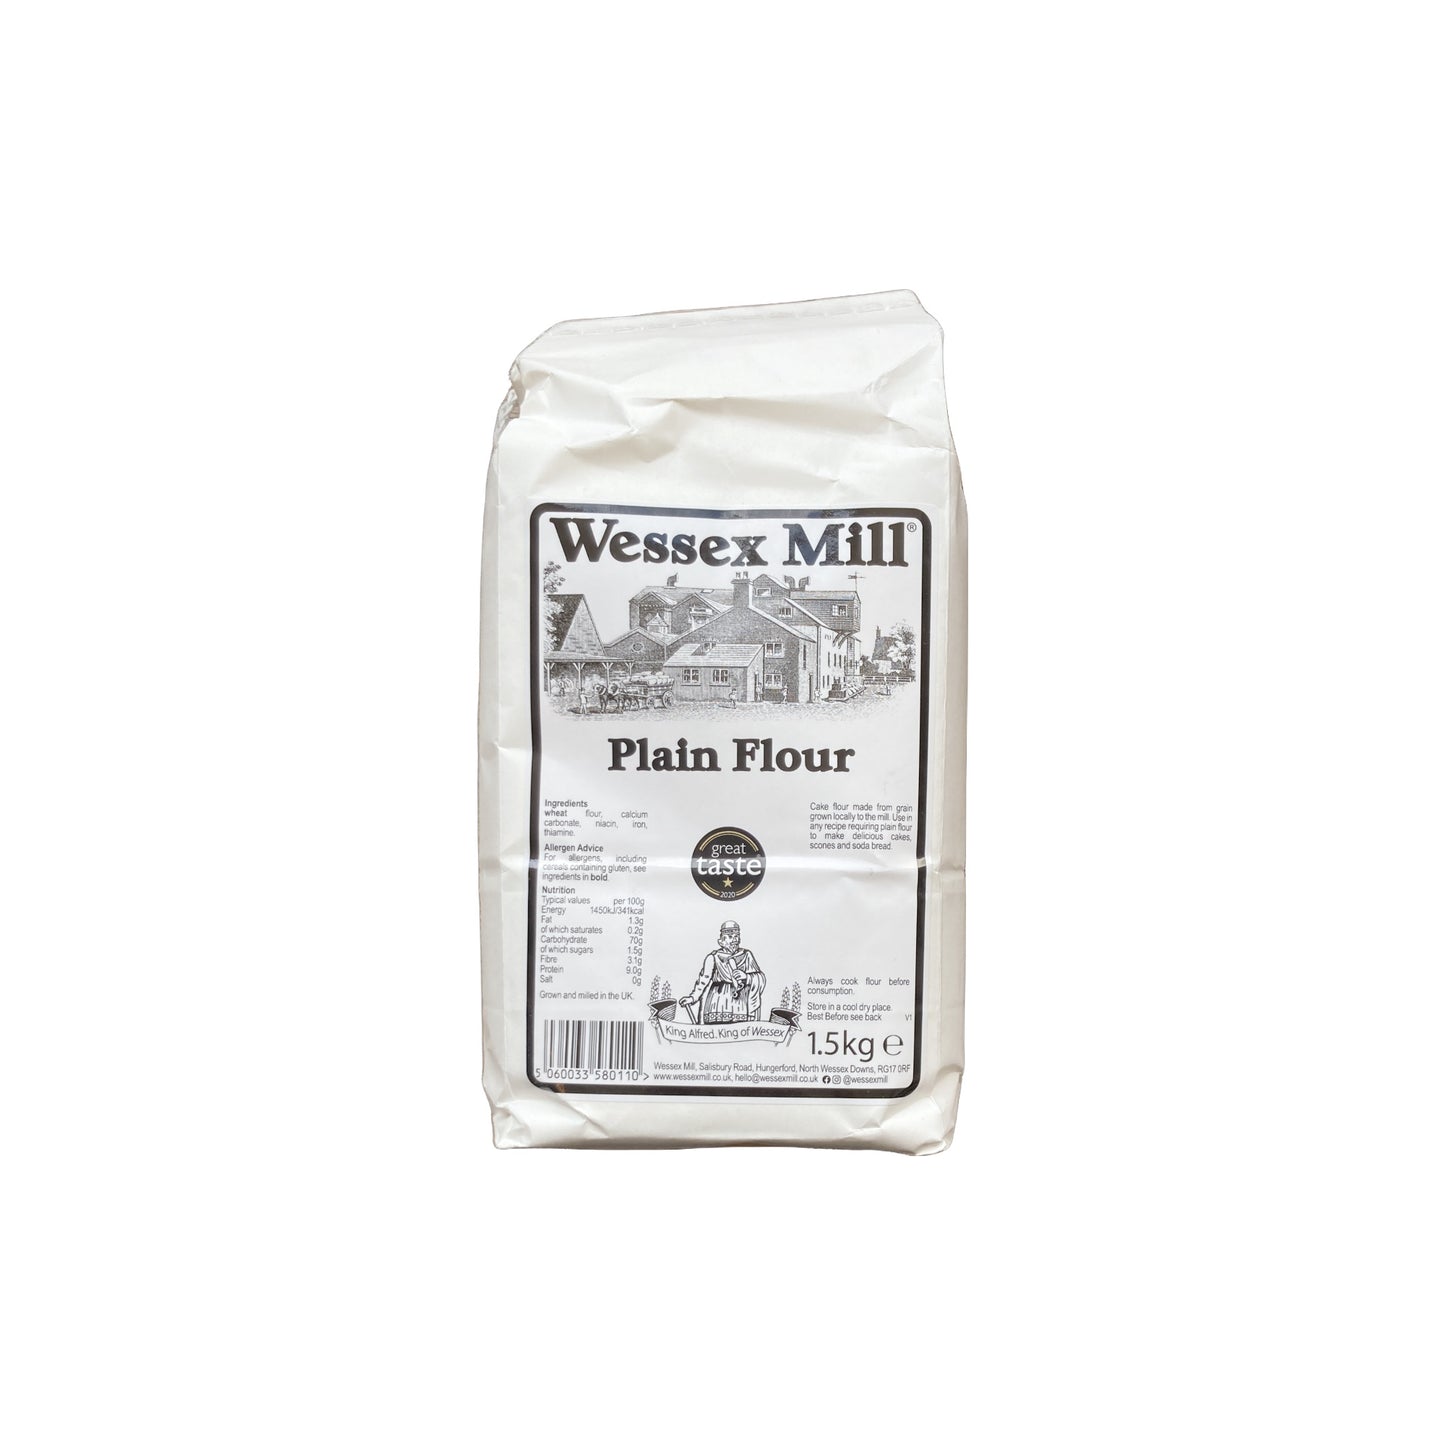 Wessex Mill Plain Flour 1.5kg